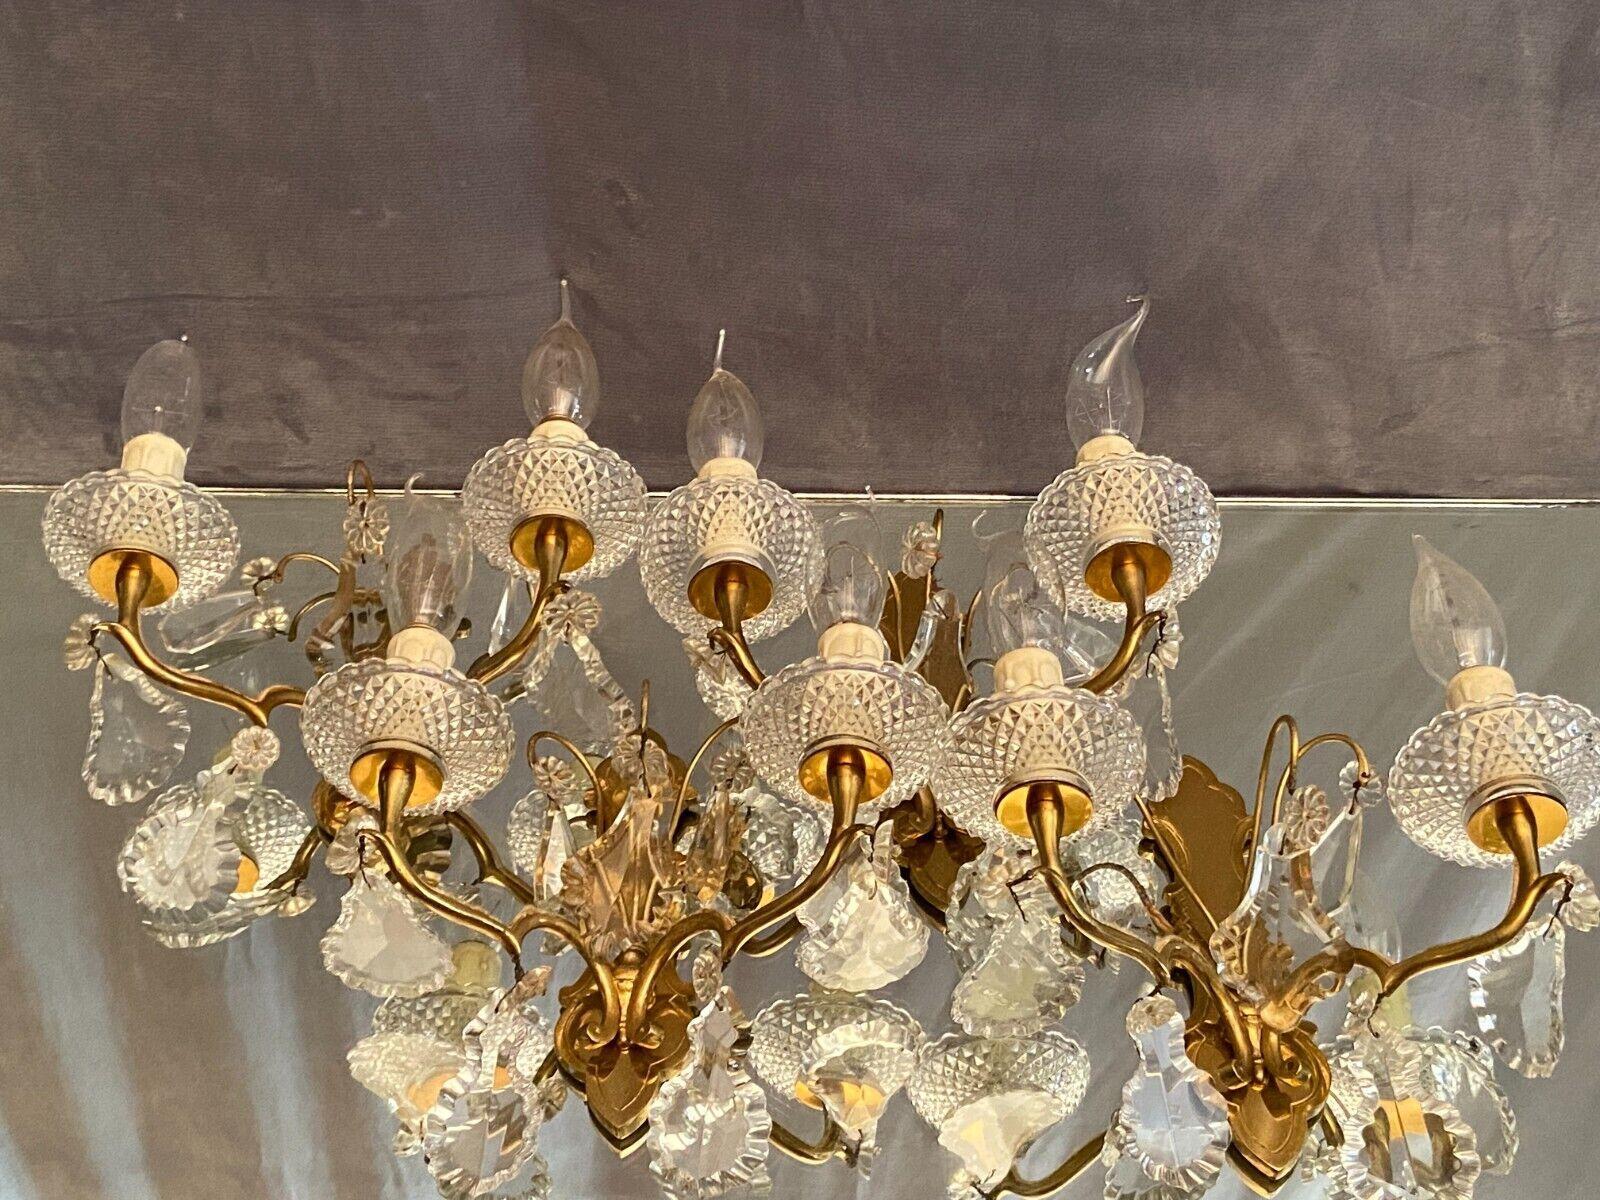 Superbe ensemble de 4 appliques murales assorties de style Louis XV en bronze doré et cristal taillé, attribuées à Baccarat France. Très haute qualité. Acheté dans une résidence à Nice en France.